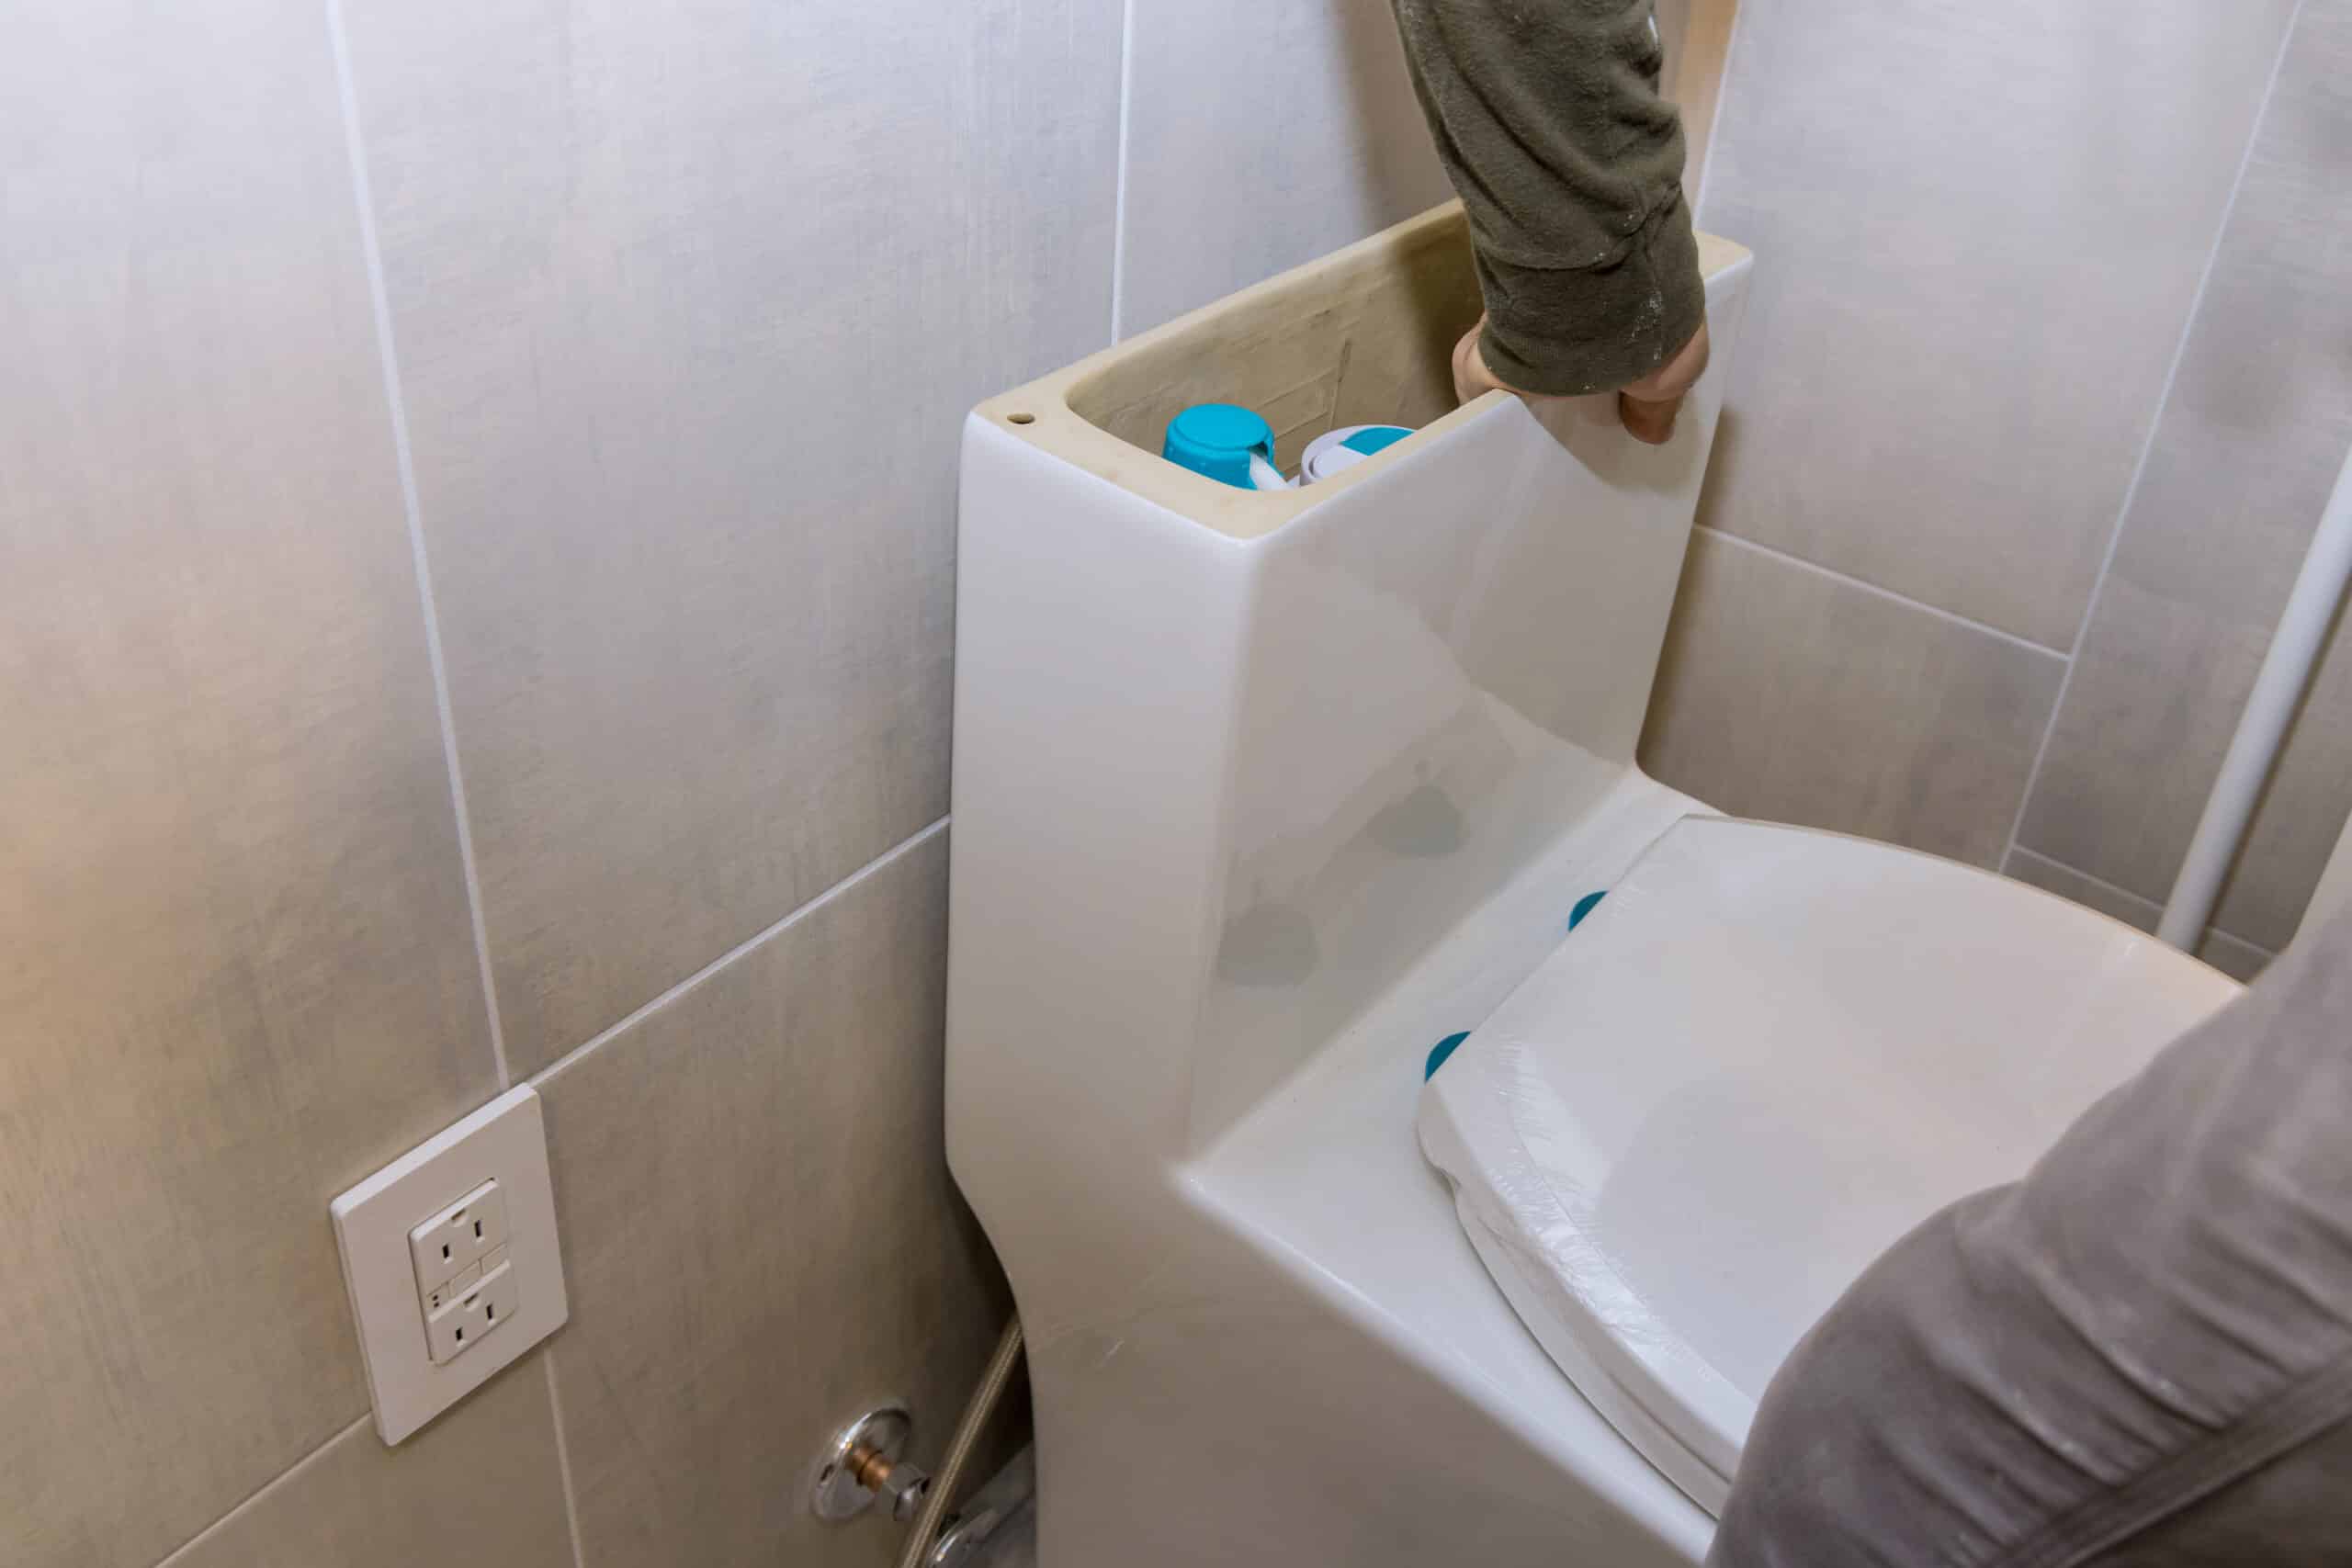 comment détecter la fuite des wc ( 3 fuites possible) TUTORIEL 